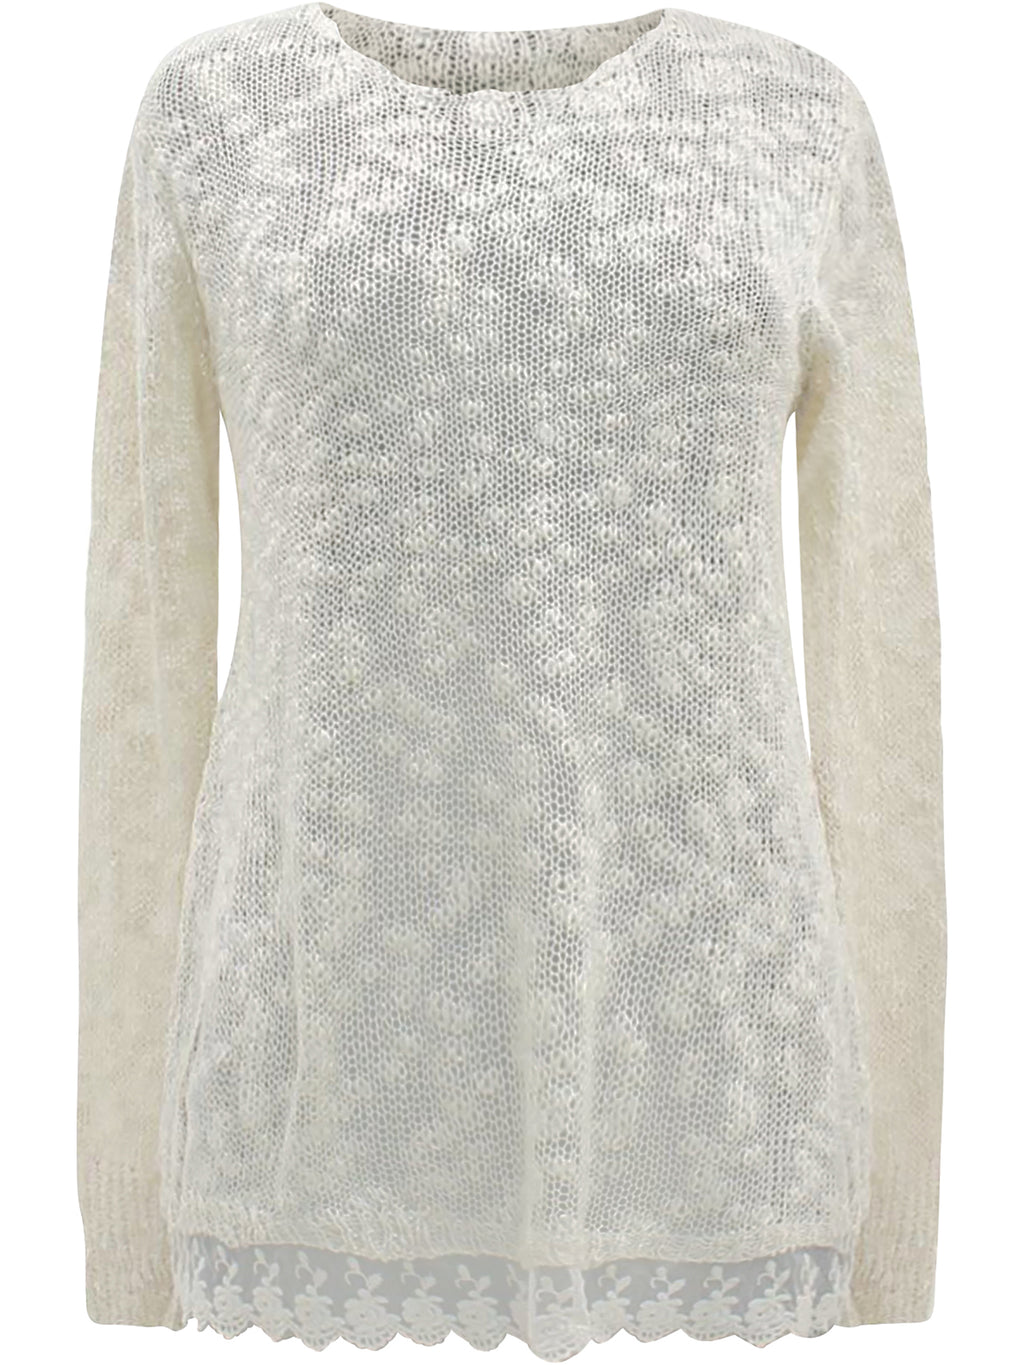 Beige & Ivory Lace Trim Knit Sweater